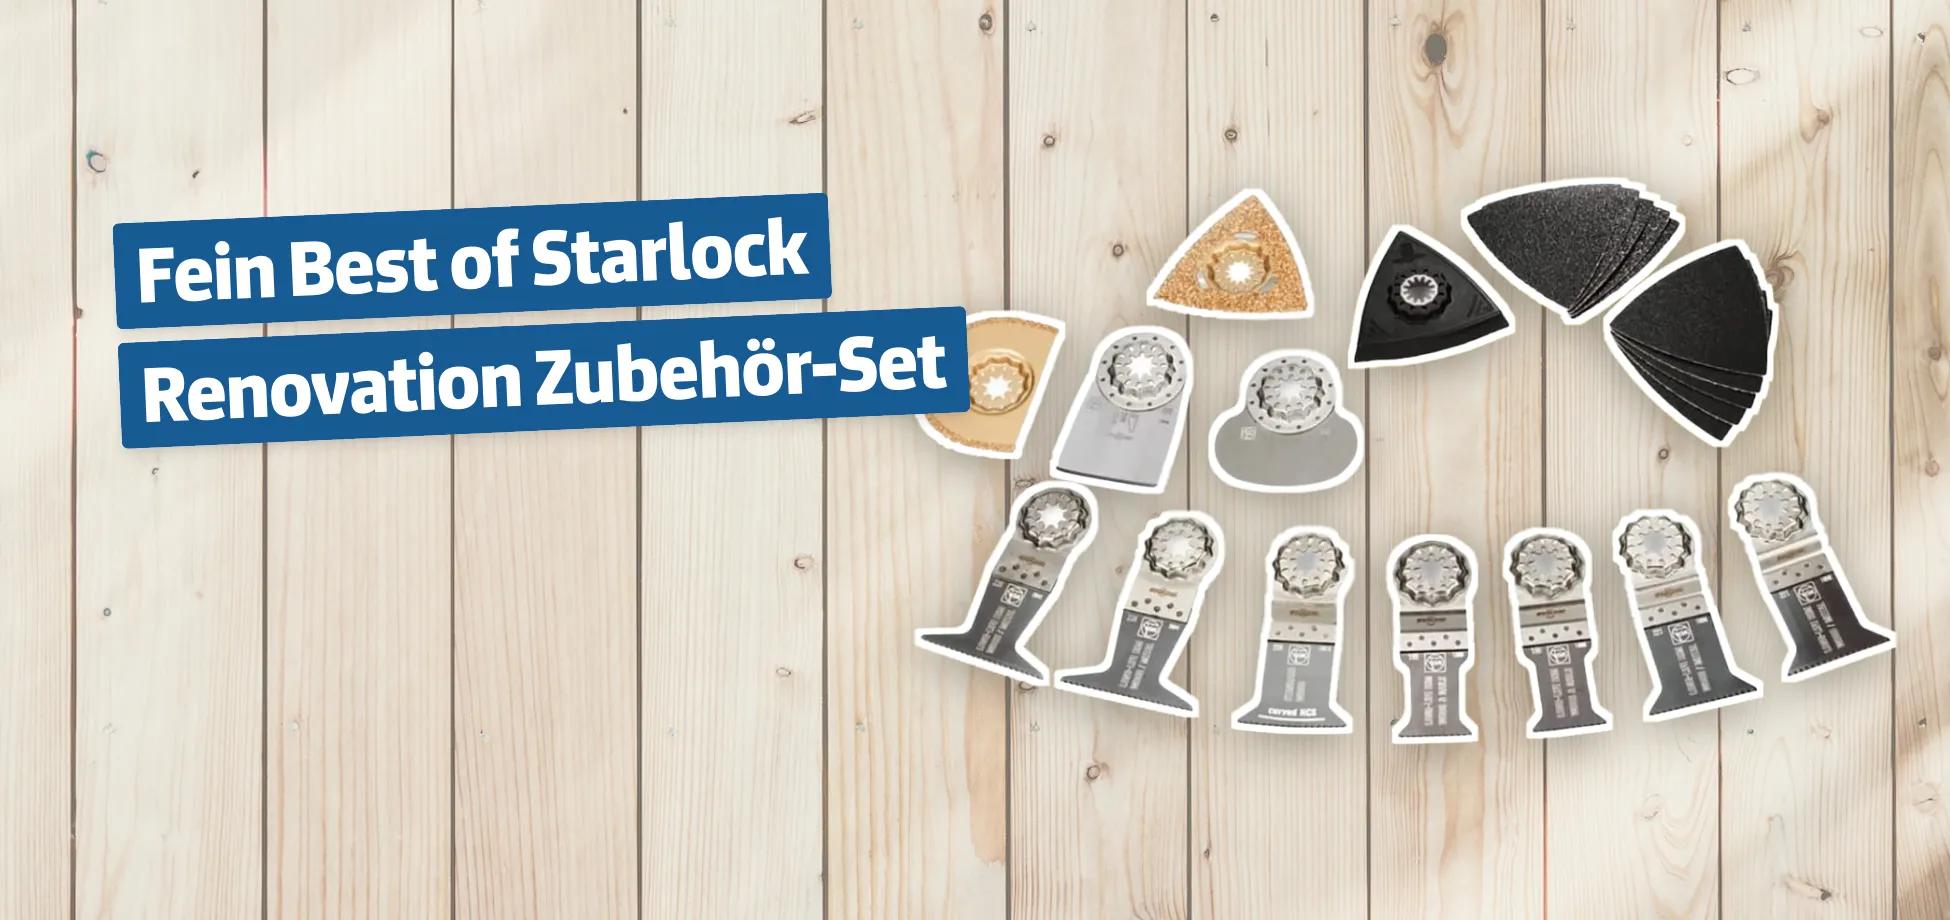 Fein Best of Starlock Renovation Zubehör-Set